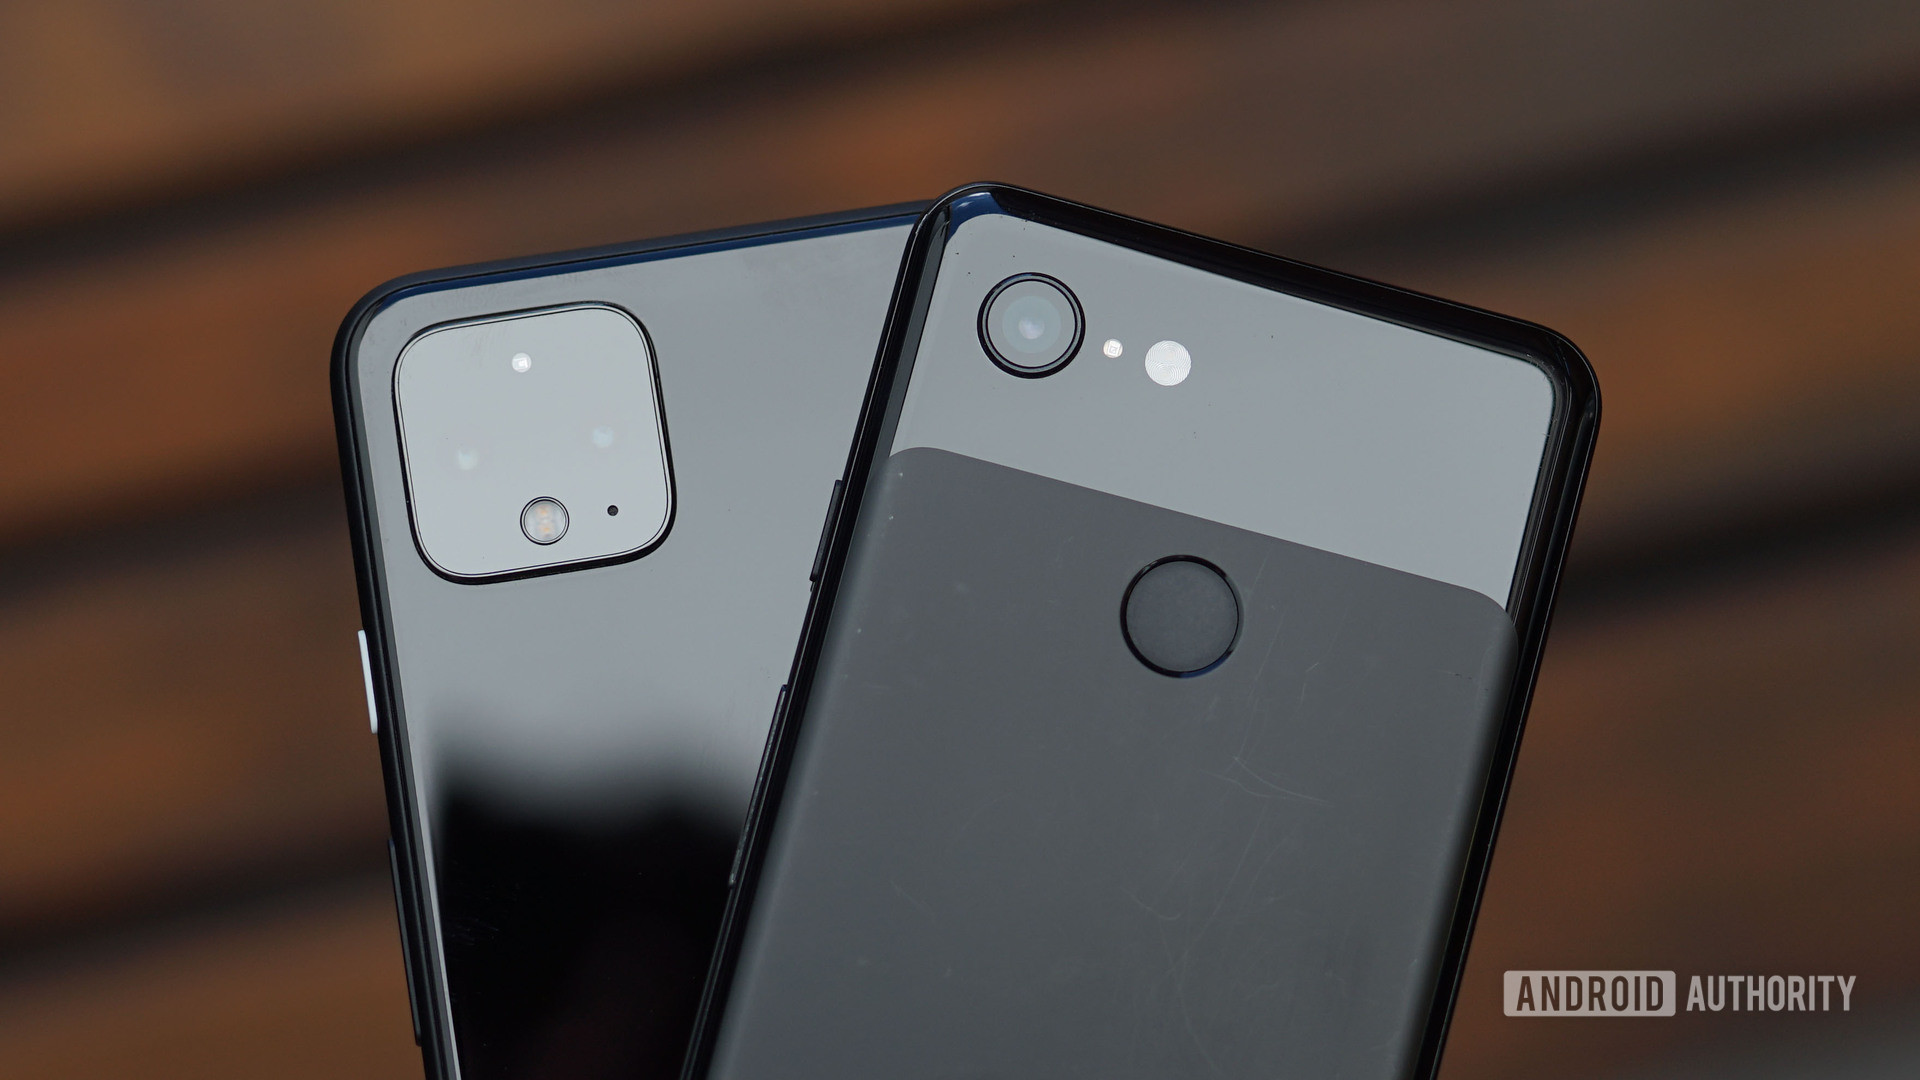 Google Pixel 3 vs Pixel 4 camera design